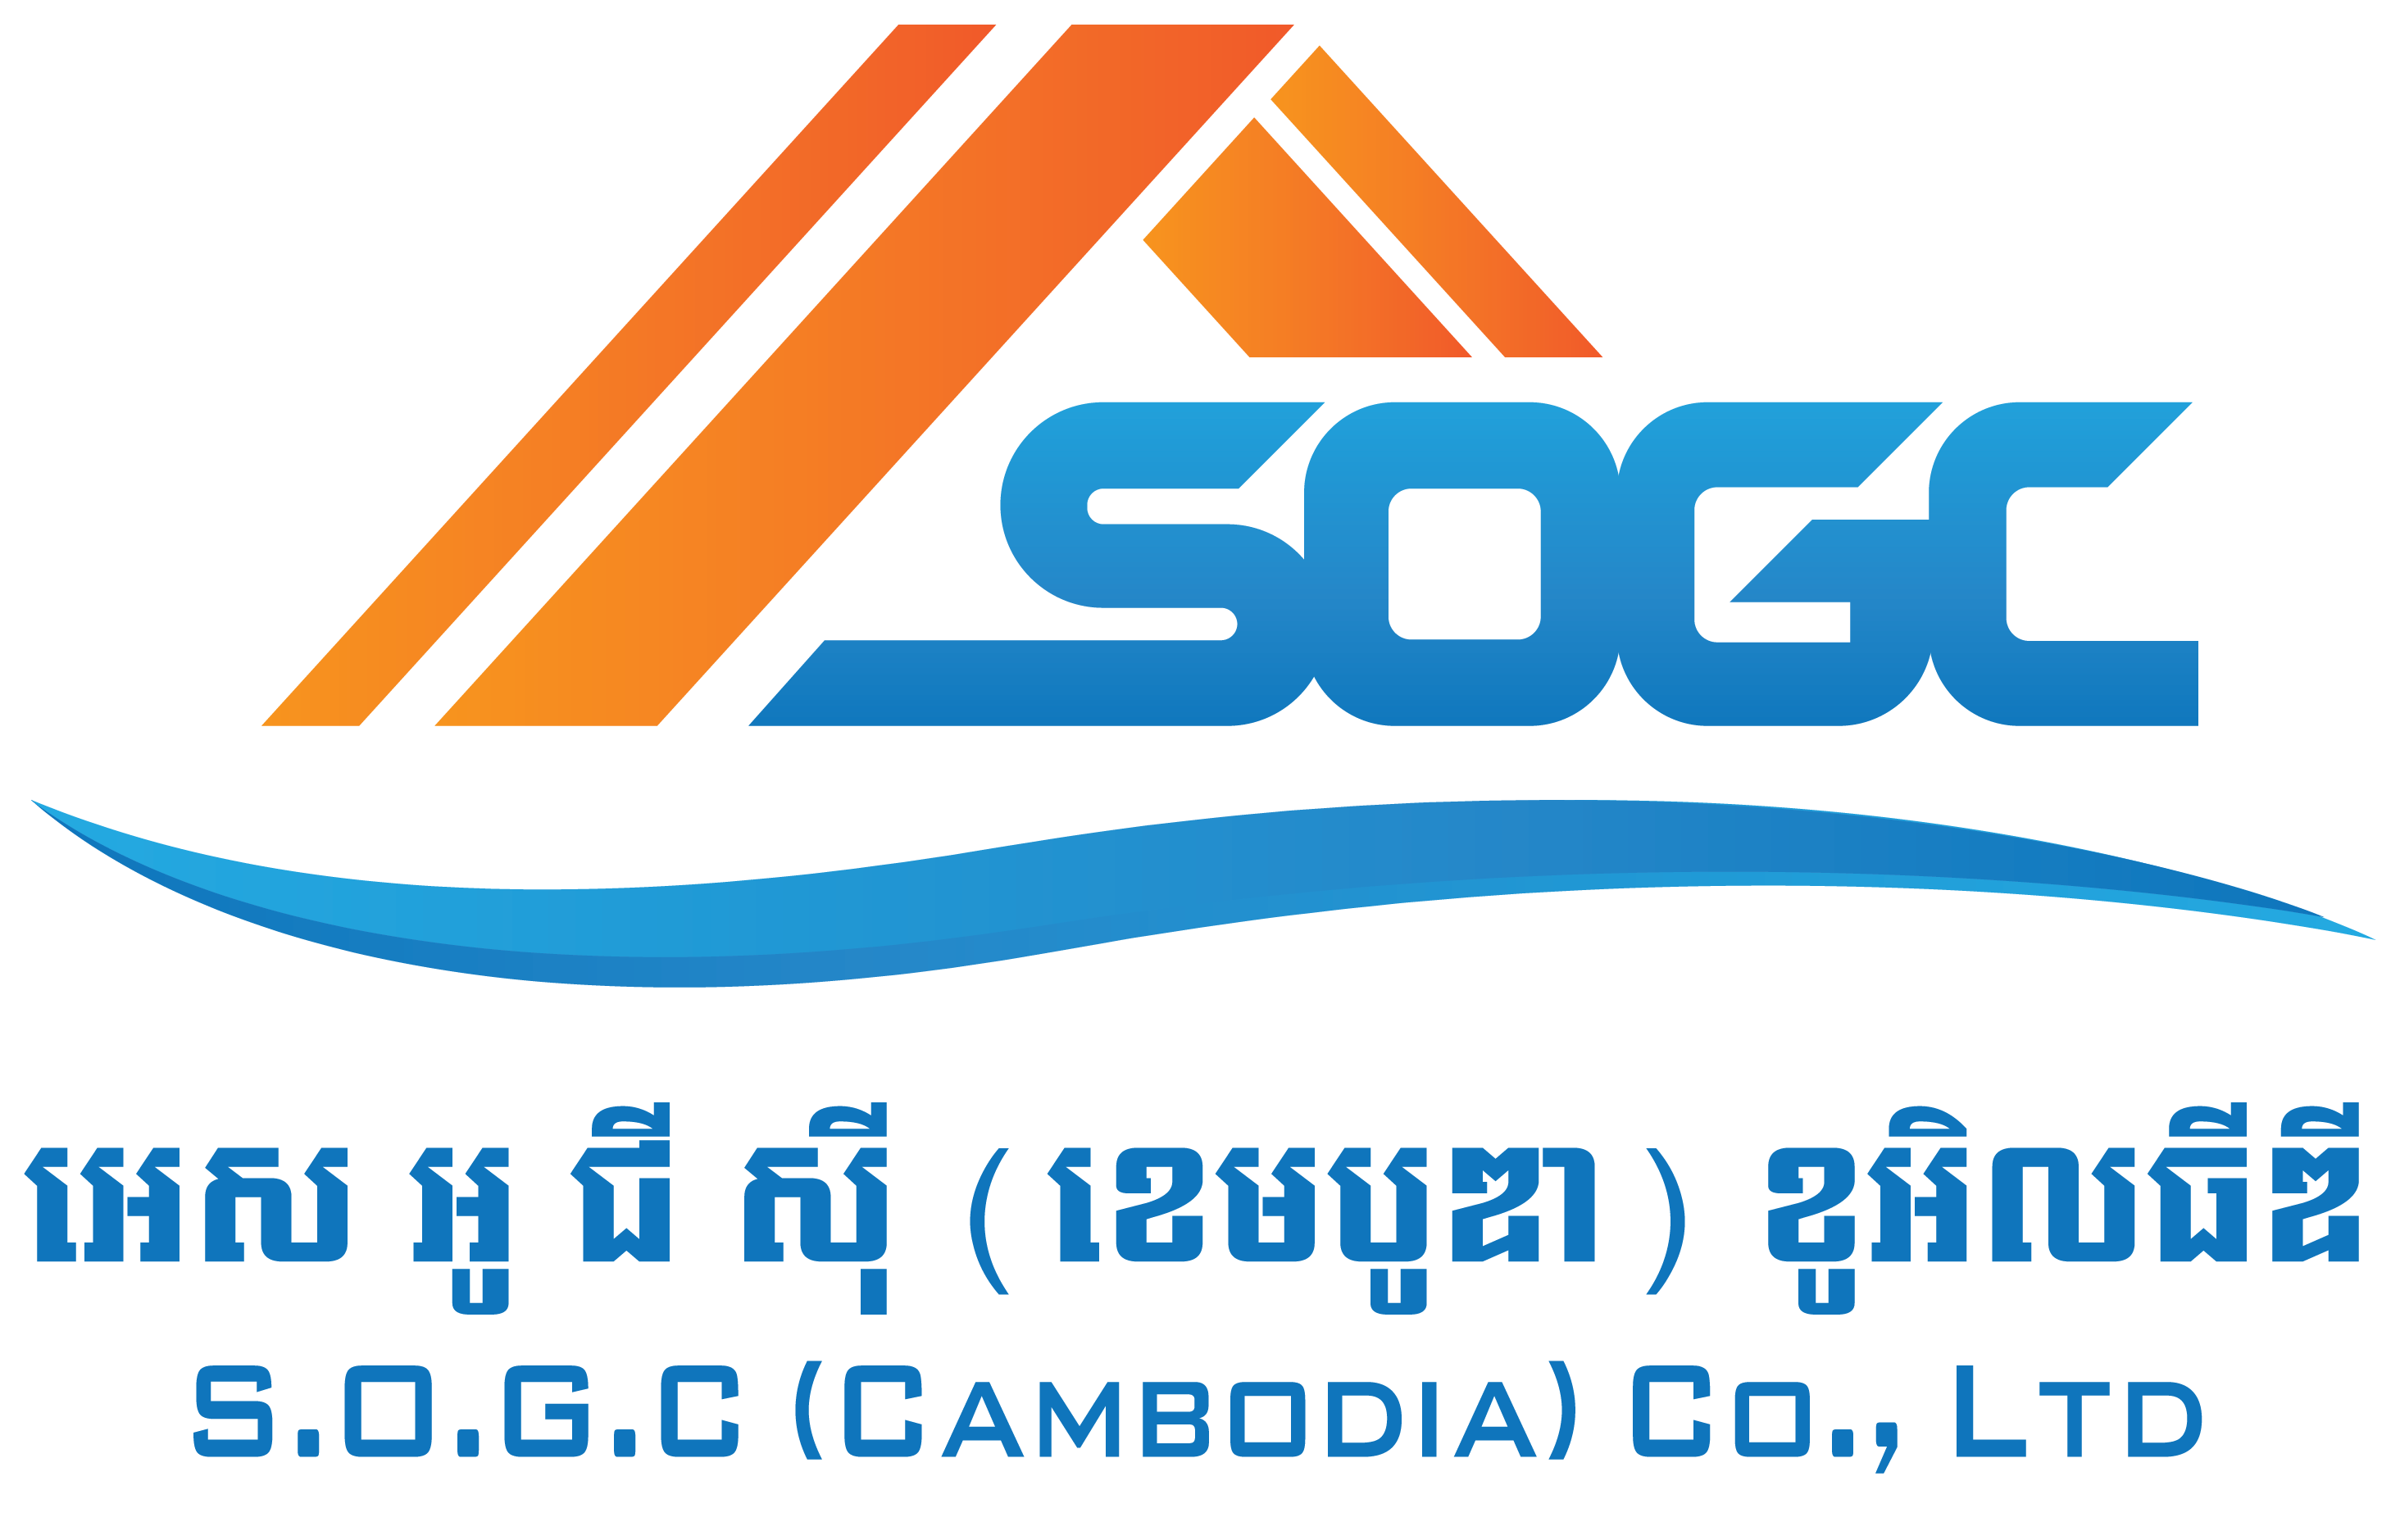 SOGC Cambodia